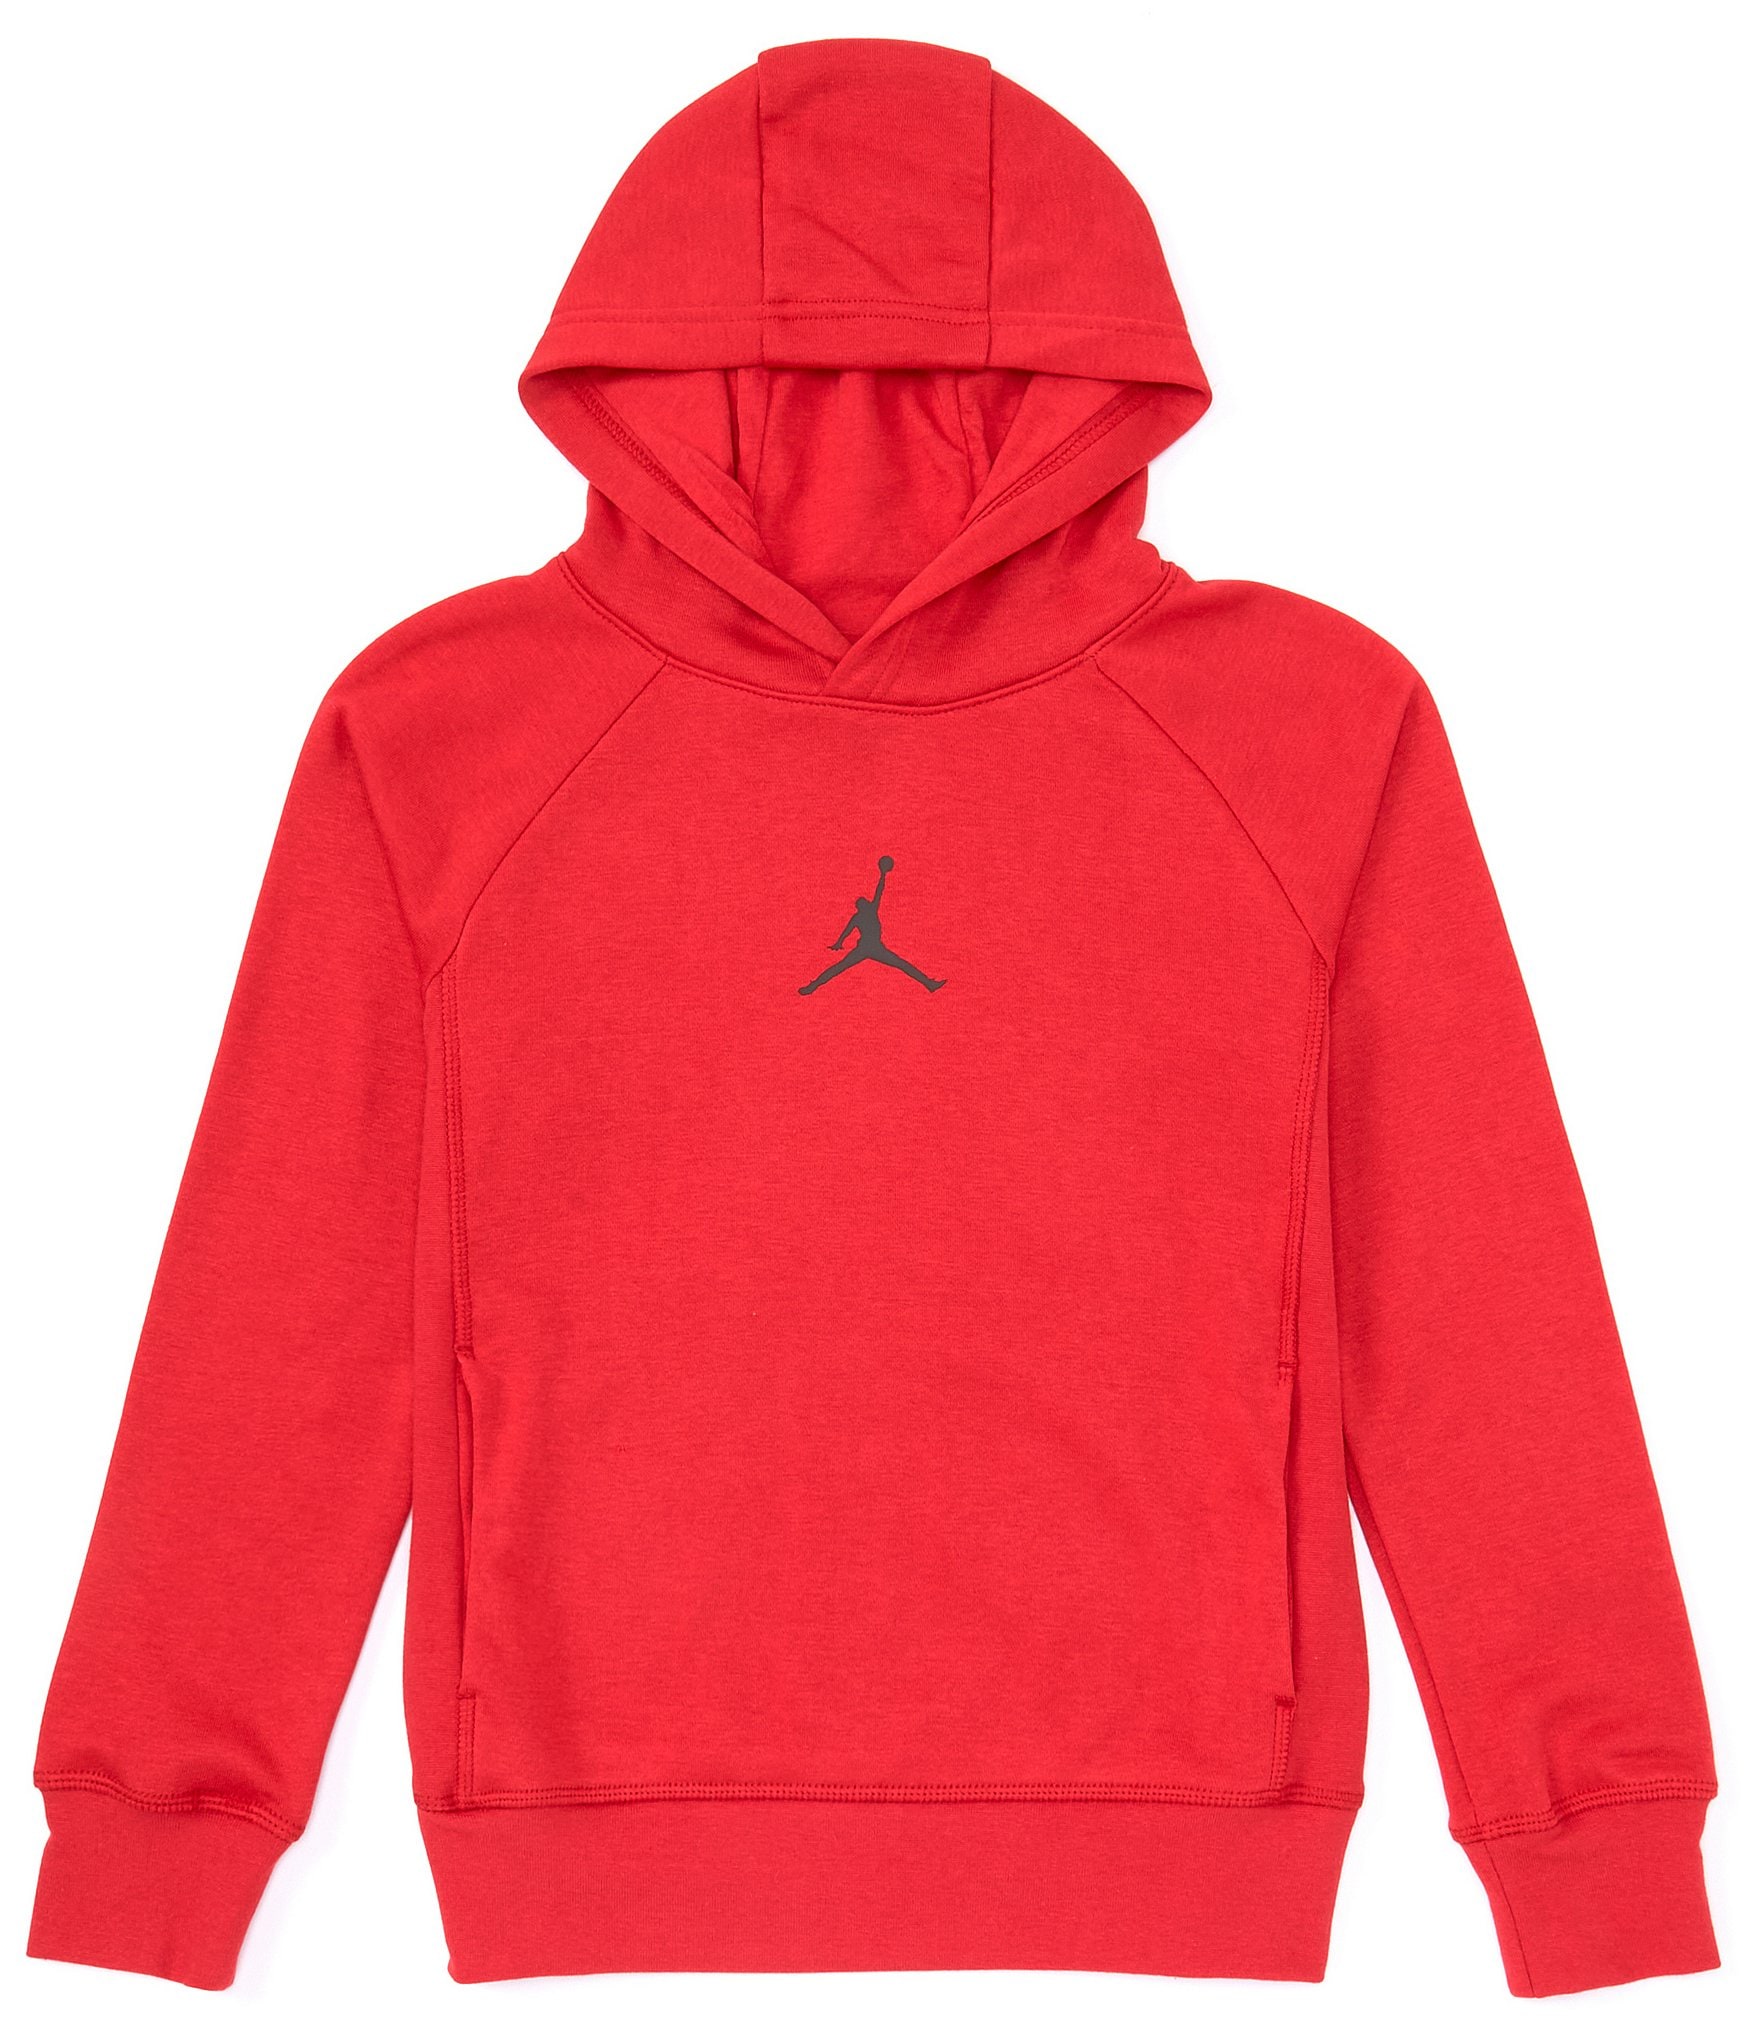 Jordan Red Hoodies & Pullovers.